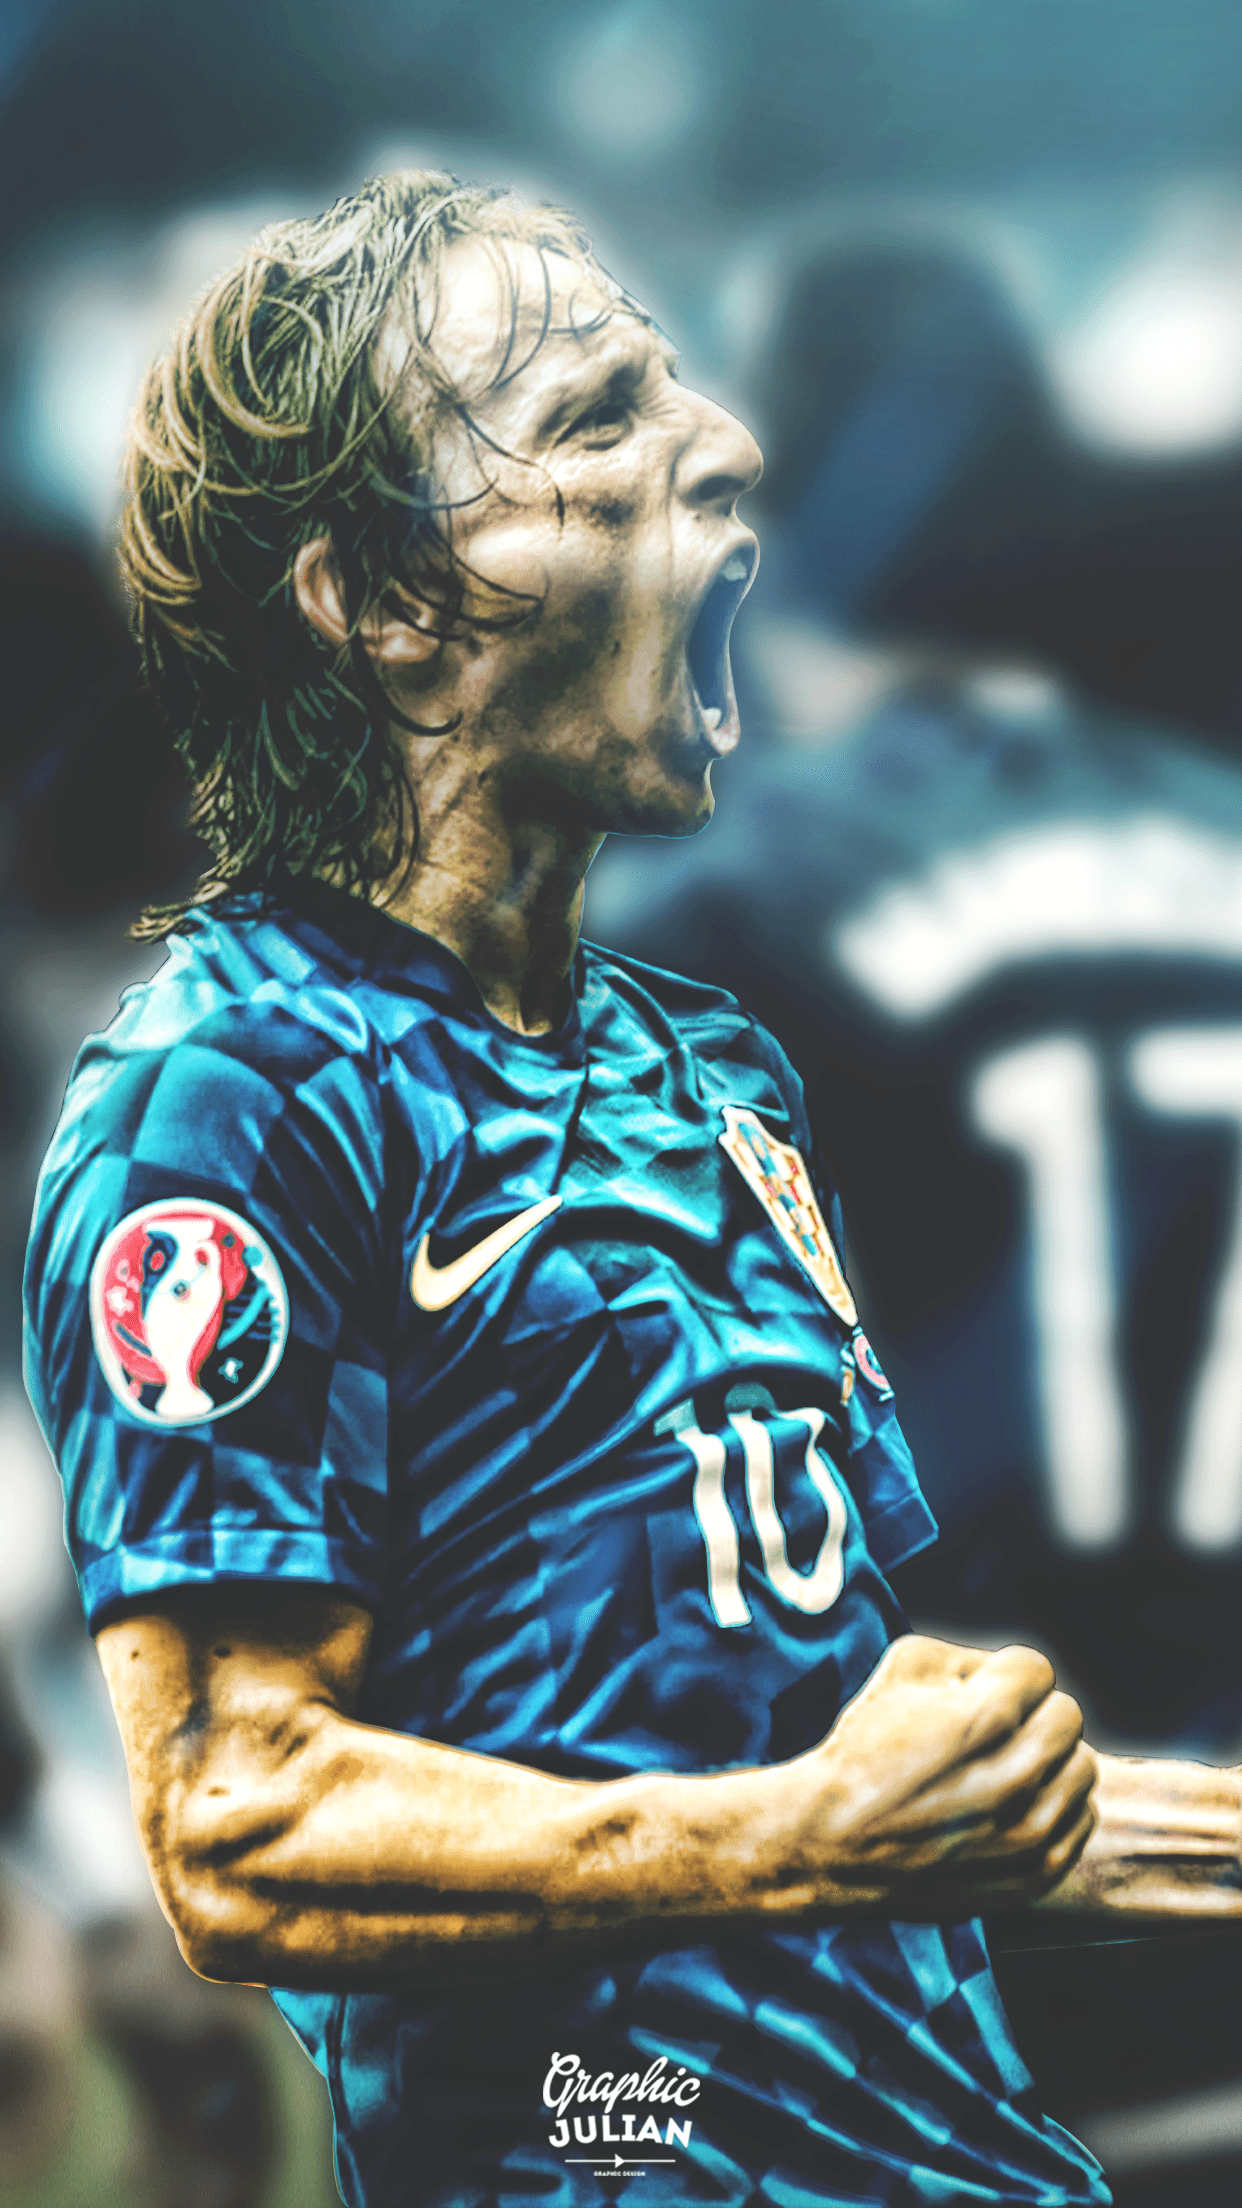 Hình nền Luka Modric: Siêu sao Luka Modric đang làm náo động không chỉ làng bóng đá mà còn cả cộng đồng mạng. Hãy tải những hình nền đẹp về cầu thủ người Croatia này để thể hiện sự tôn trọng và yêu mến của bạn dành cho anh chàng cầu thủ này.